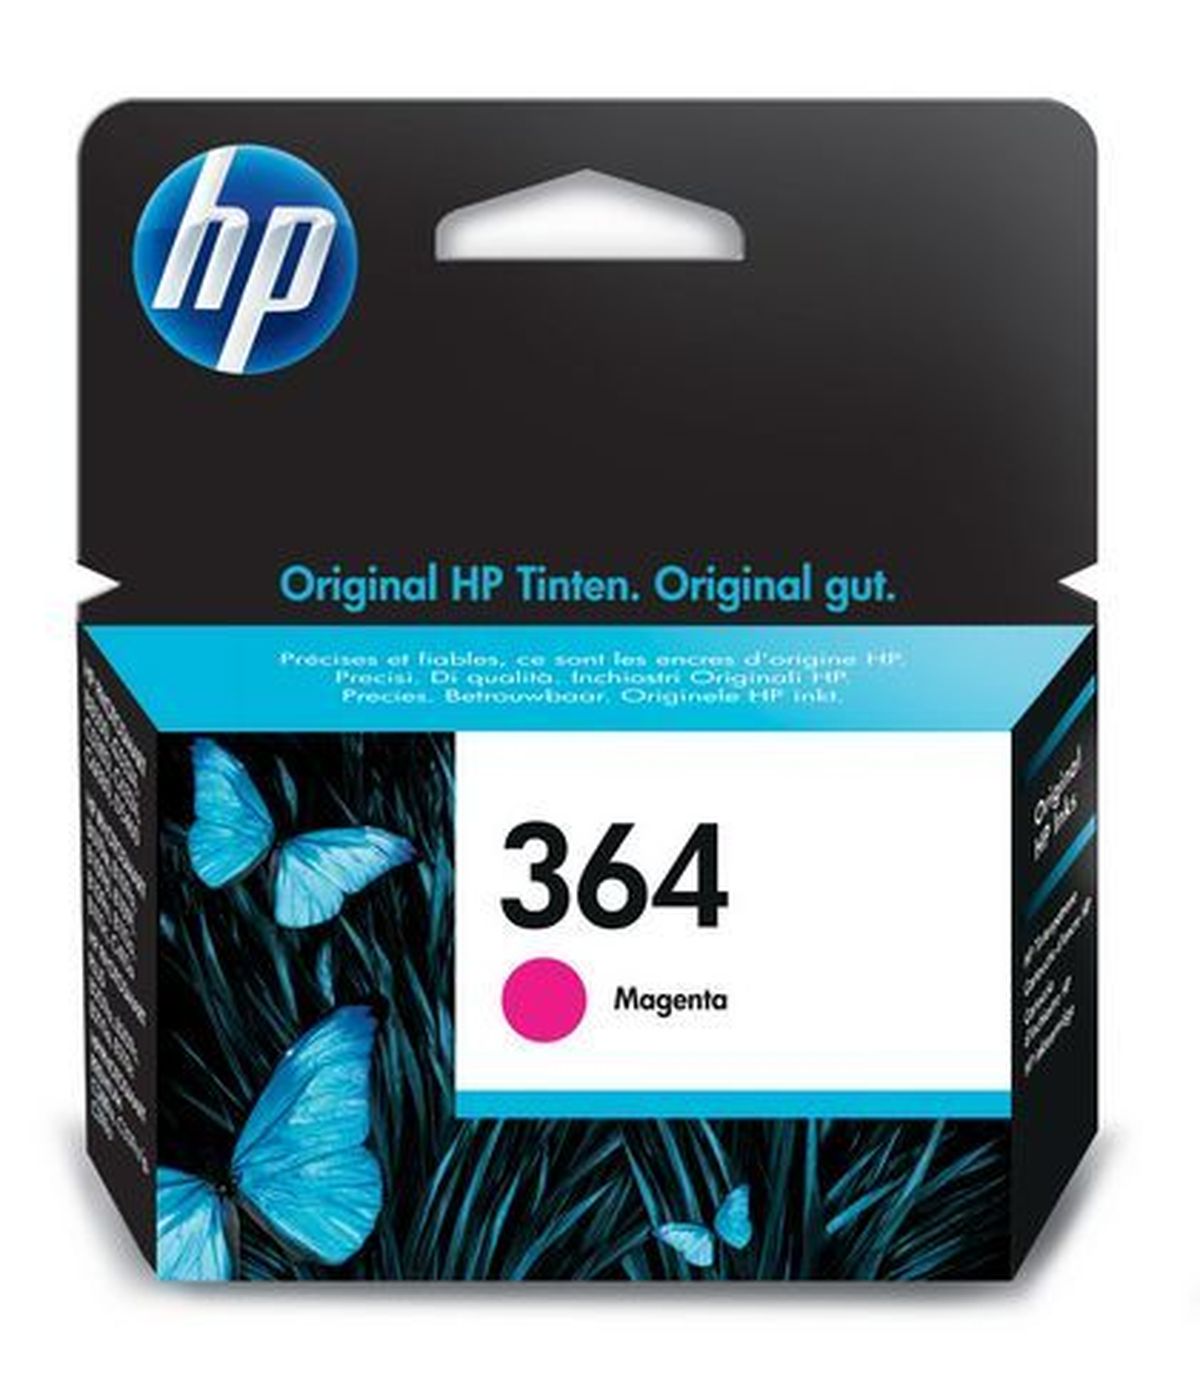 Cartouche HP 364 magenta pour imprimante jet d'encre